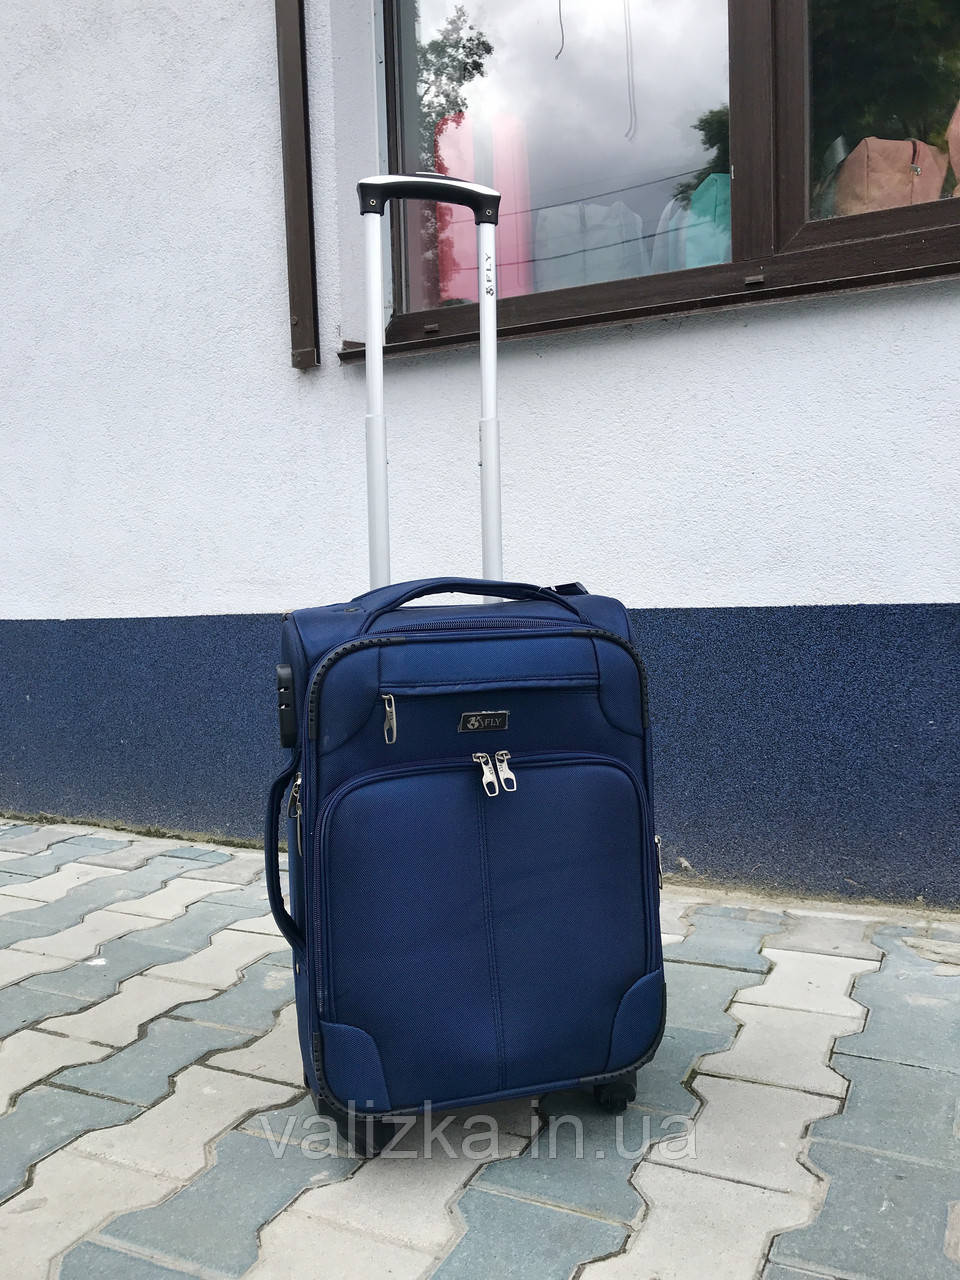 Якісний текстильний валізу маленький синій для ручної поклажі на 4-х колесах 360* Польща